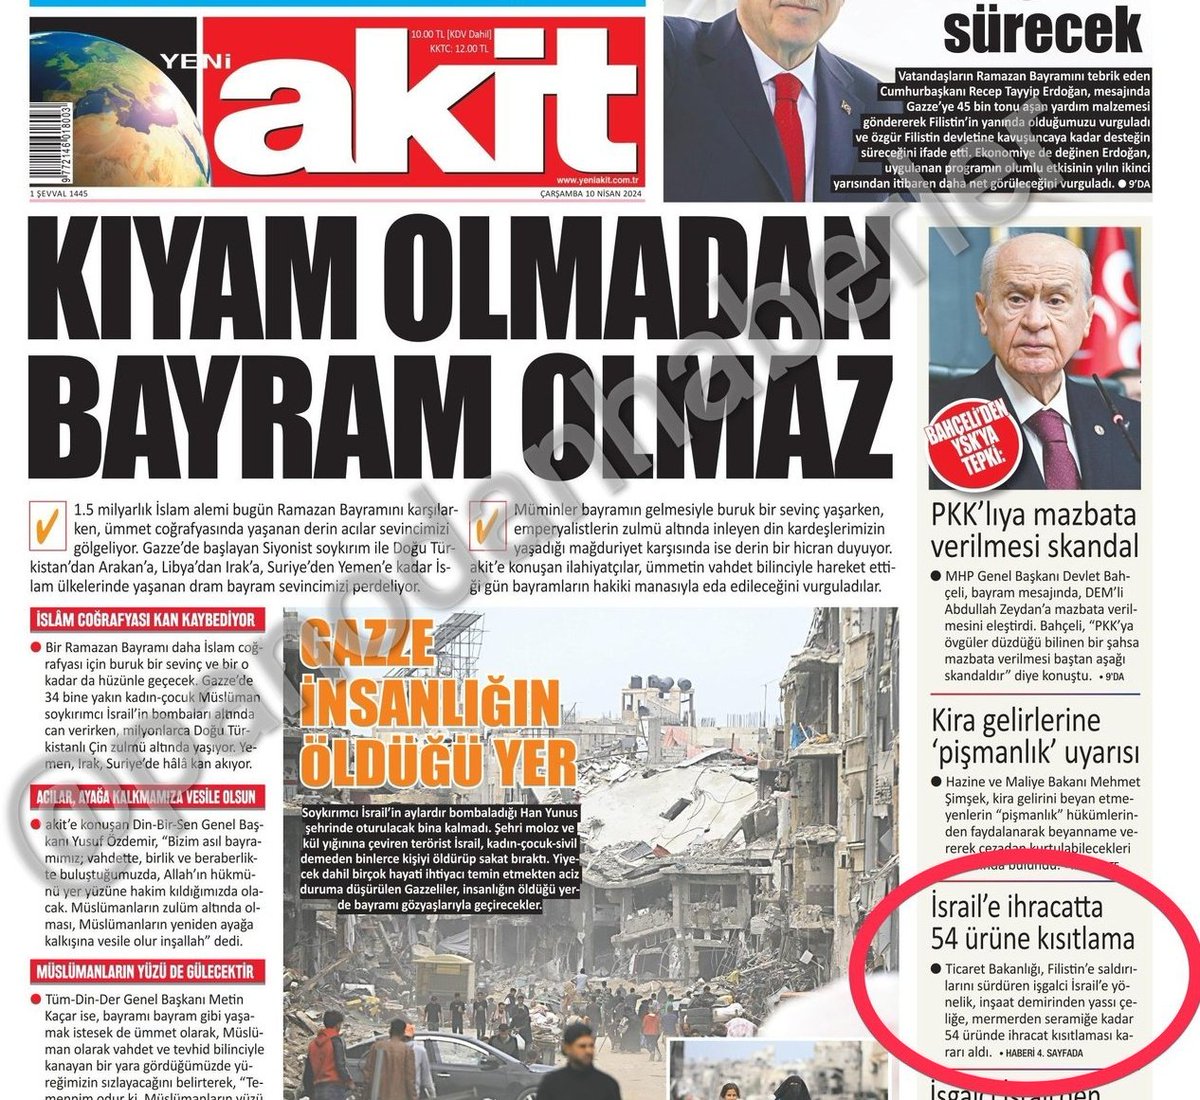 gerçekler @yeniakit ile anlaşılır: ilk kupür manşet, ikinci kupür sağ alt köşe.